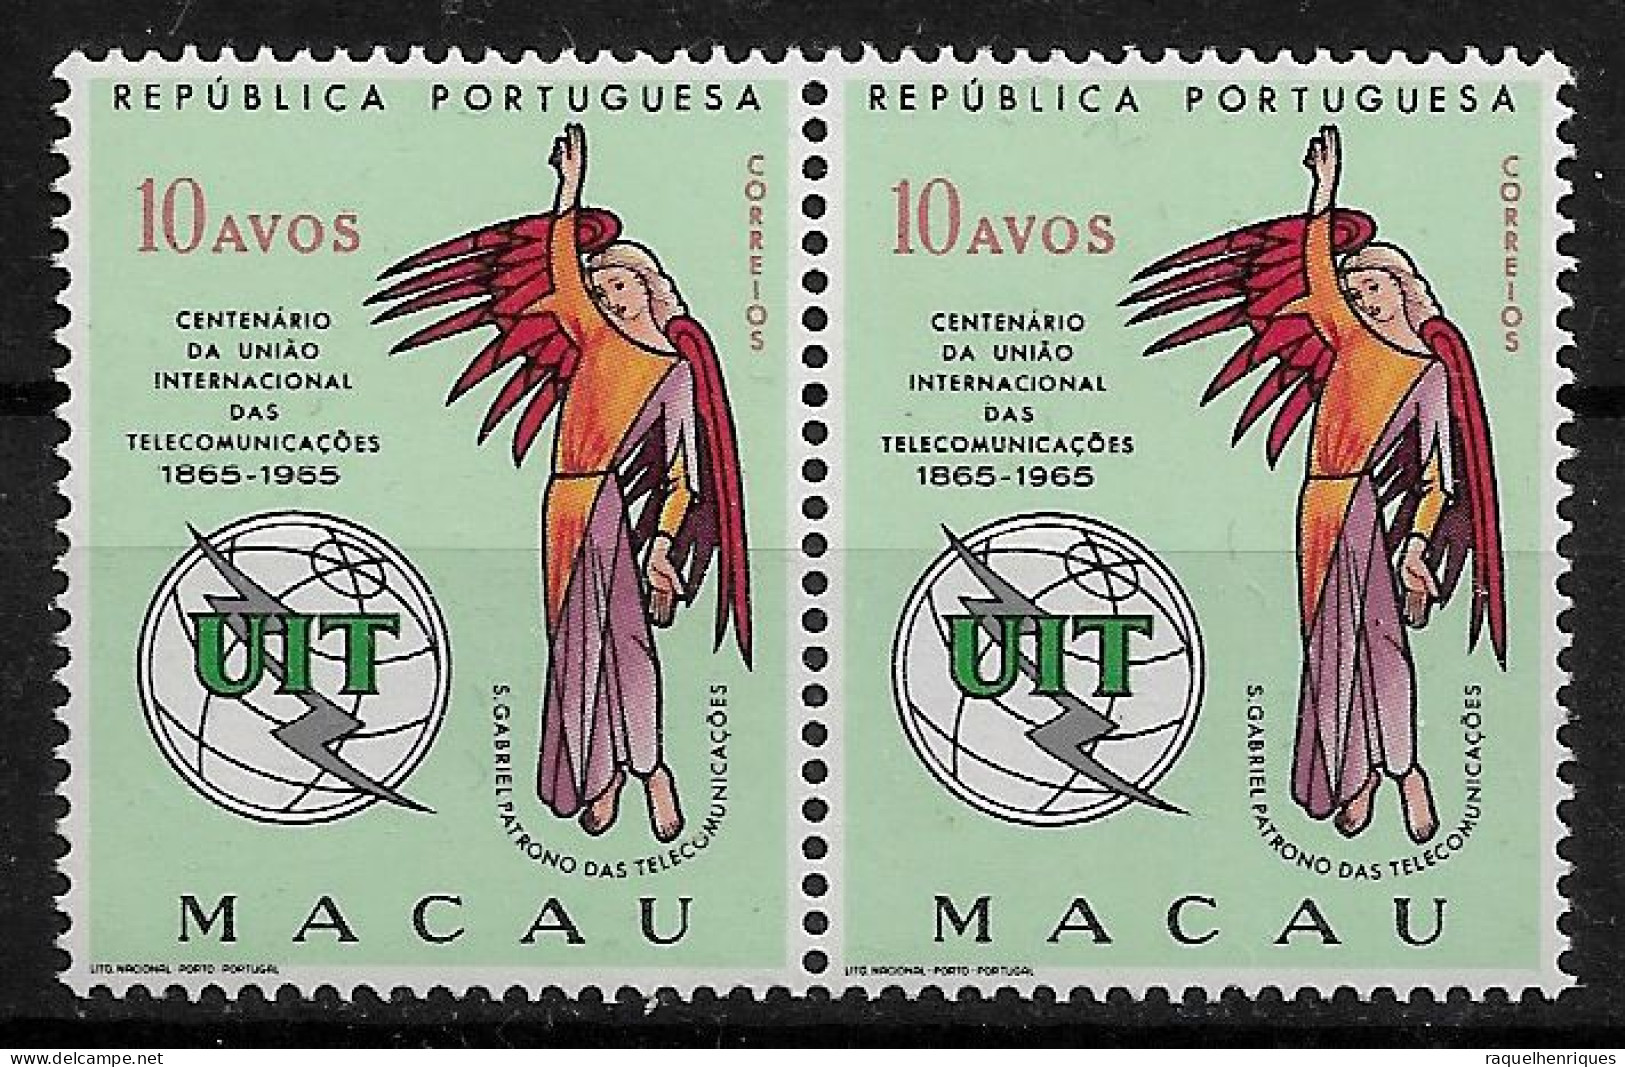 MACAU 1965 The 100th Anniversary Of I.T.U. PAIR MNH (NP#72-P17-L8) - Ongebruikt